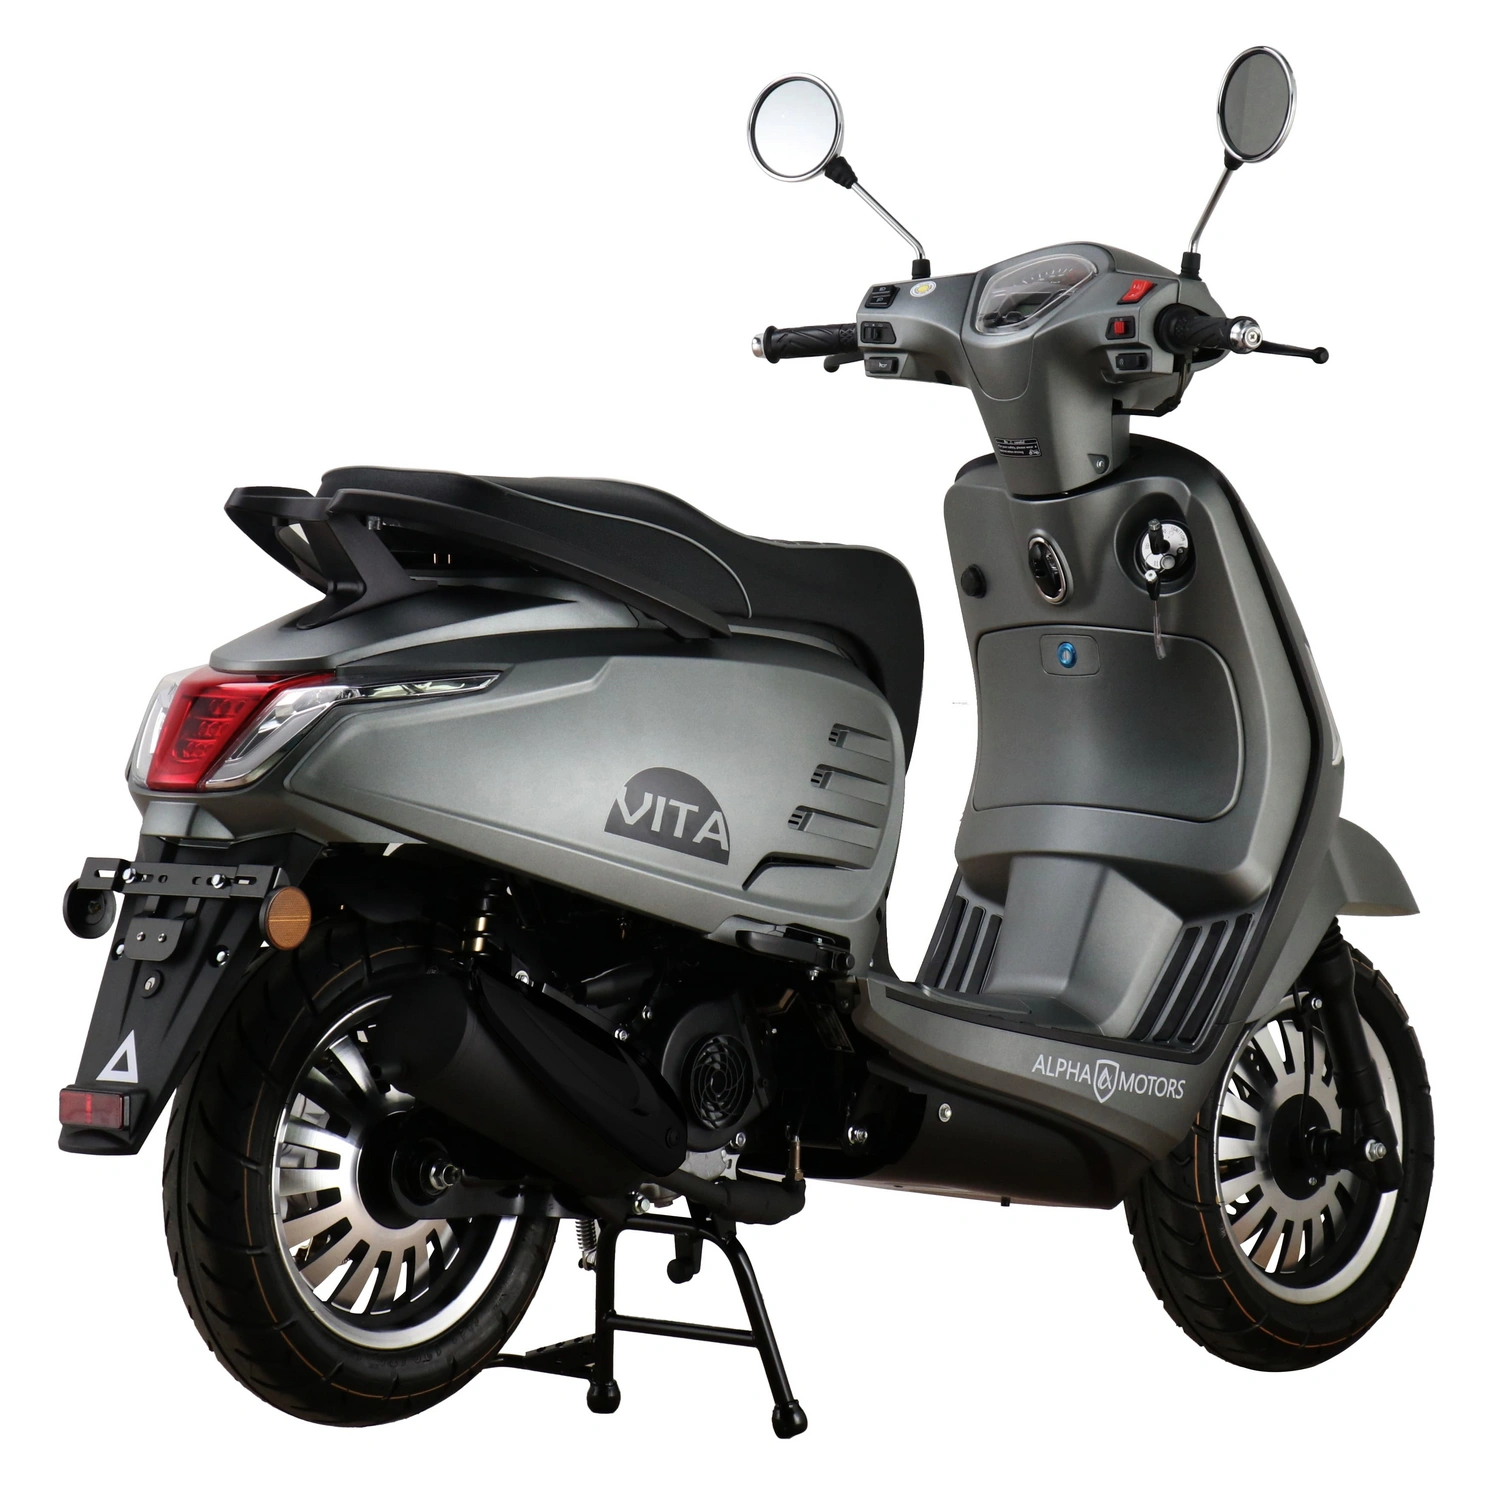 ALPHA MOTORS Motorroller »Vita«, 125 cm³, 85 km/h, Euro 5 | Motorroller